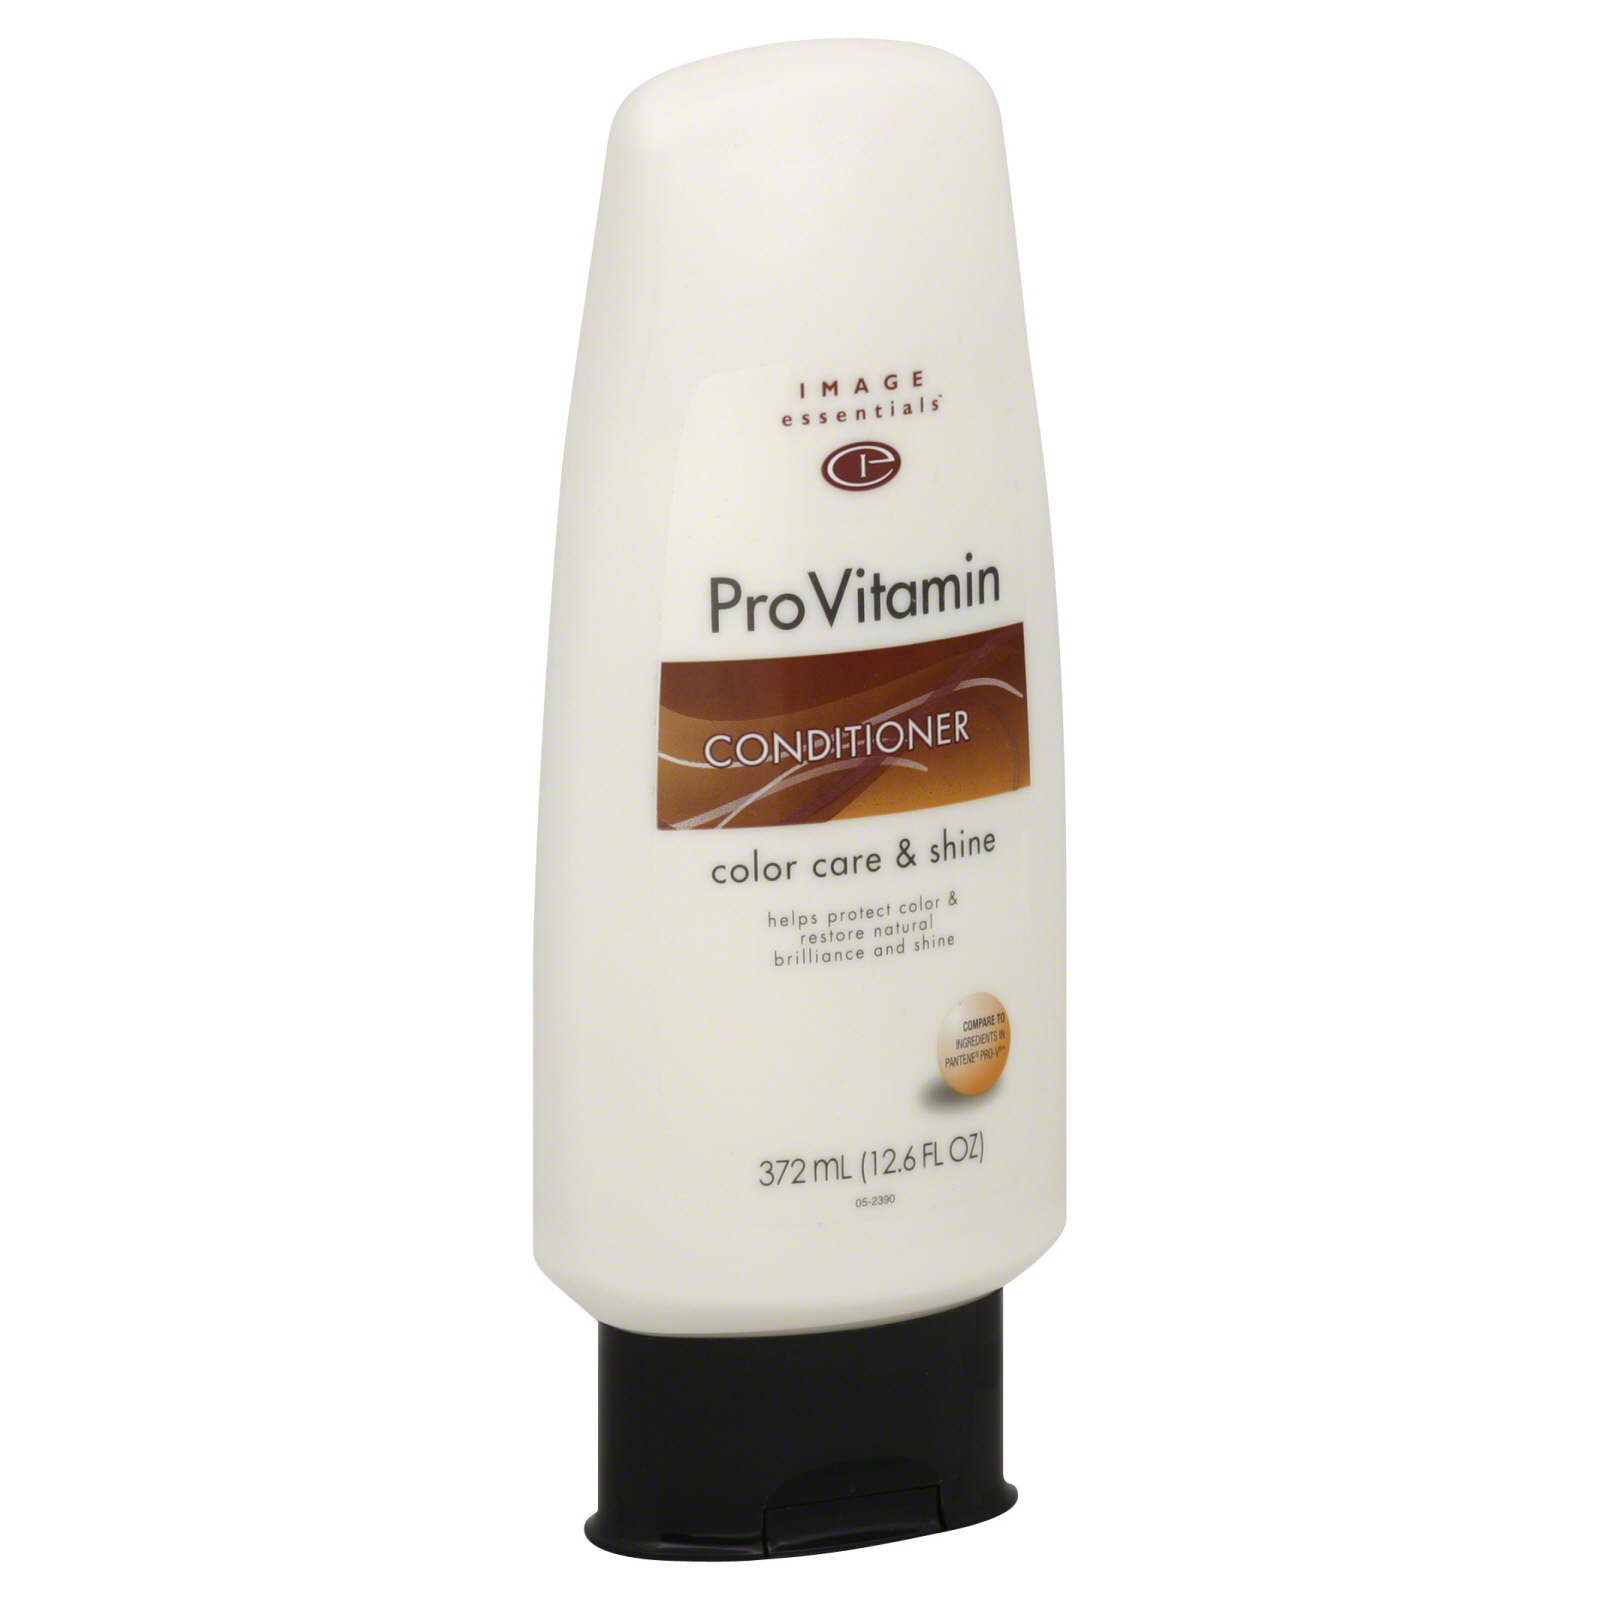 Image Essentials ProVitamin Conditioner, Color Care & Shine 12.6 fl oz (372 ml)